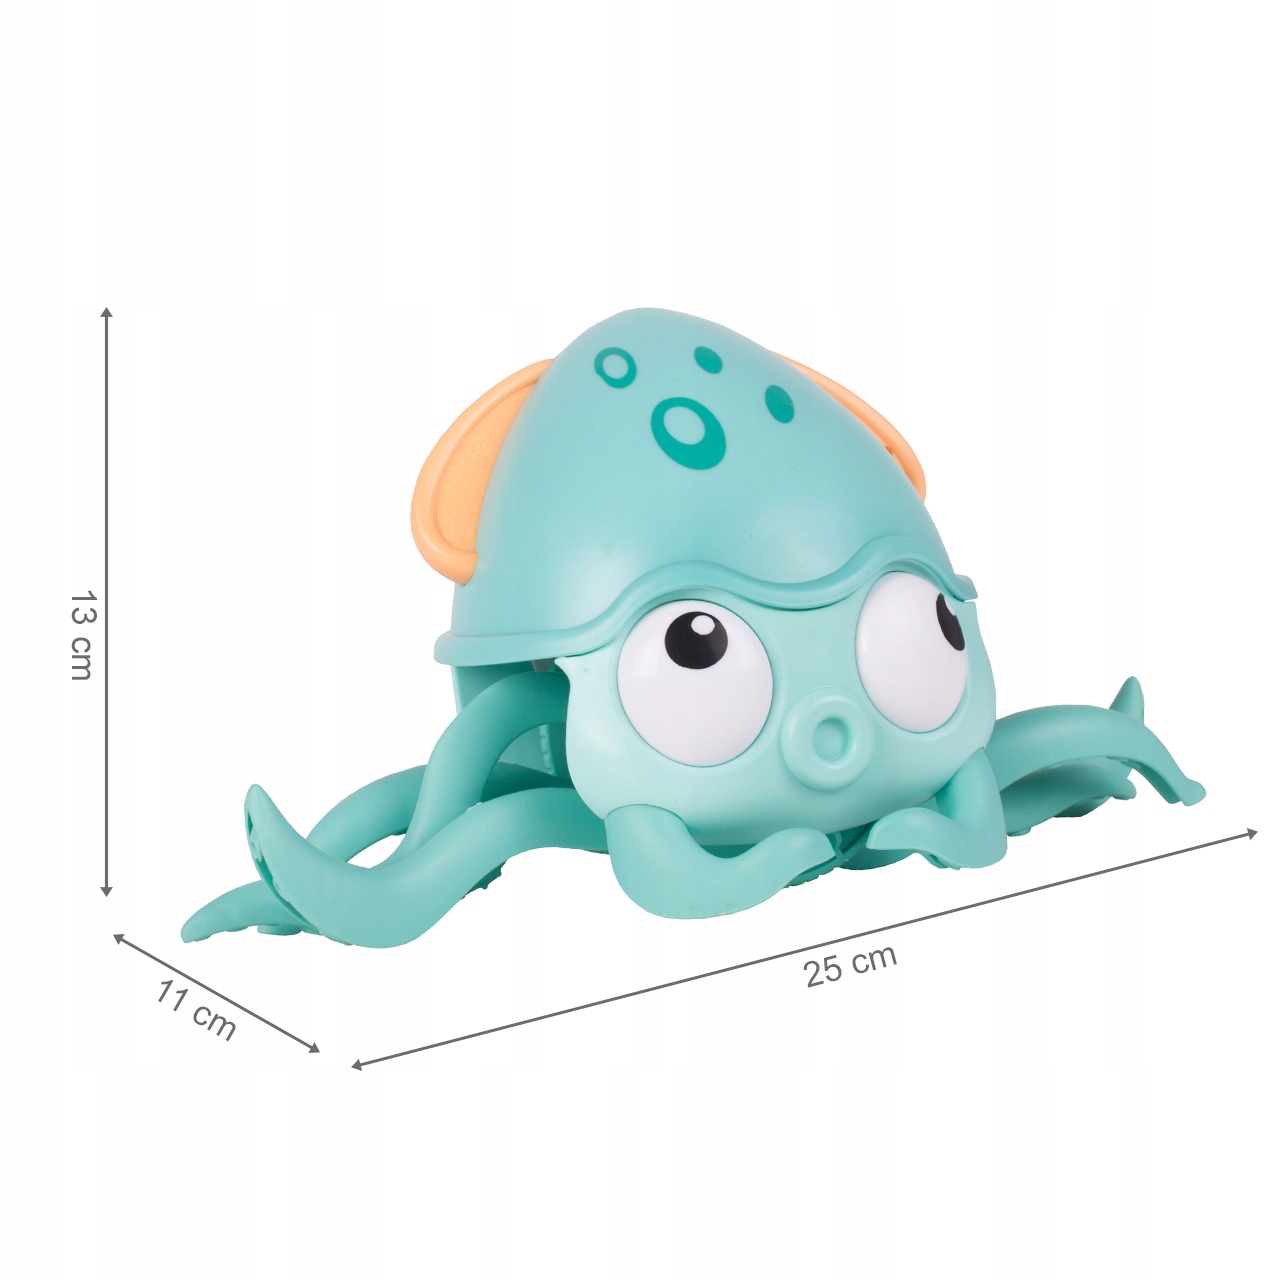 Caracatita interactiva Charming Octopus idealSTORE, Dimensiuni 25 x 11 x 13 Dotata cu Sfoara de tras, Ajuta la dezvoltarea psiho-motorie a copilului, Perfecta pentru o baie linistita